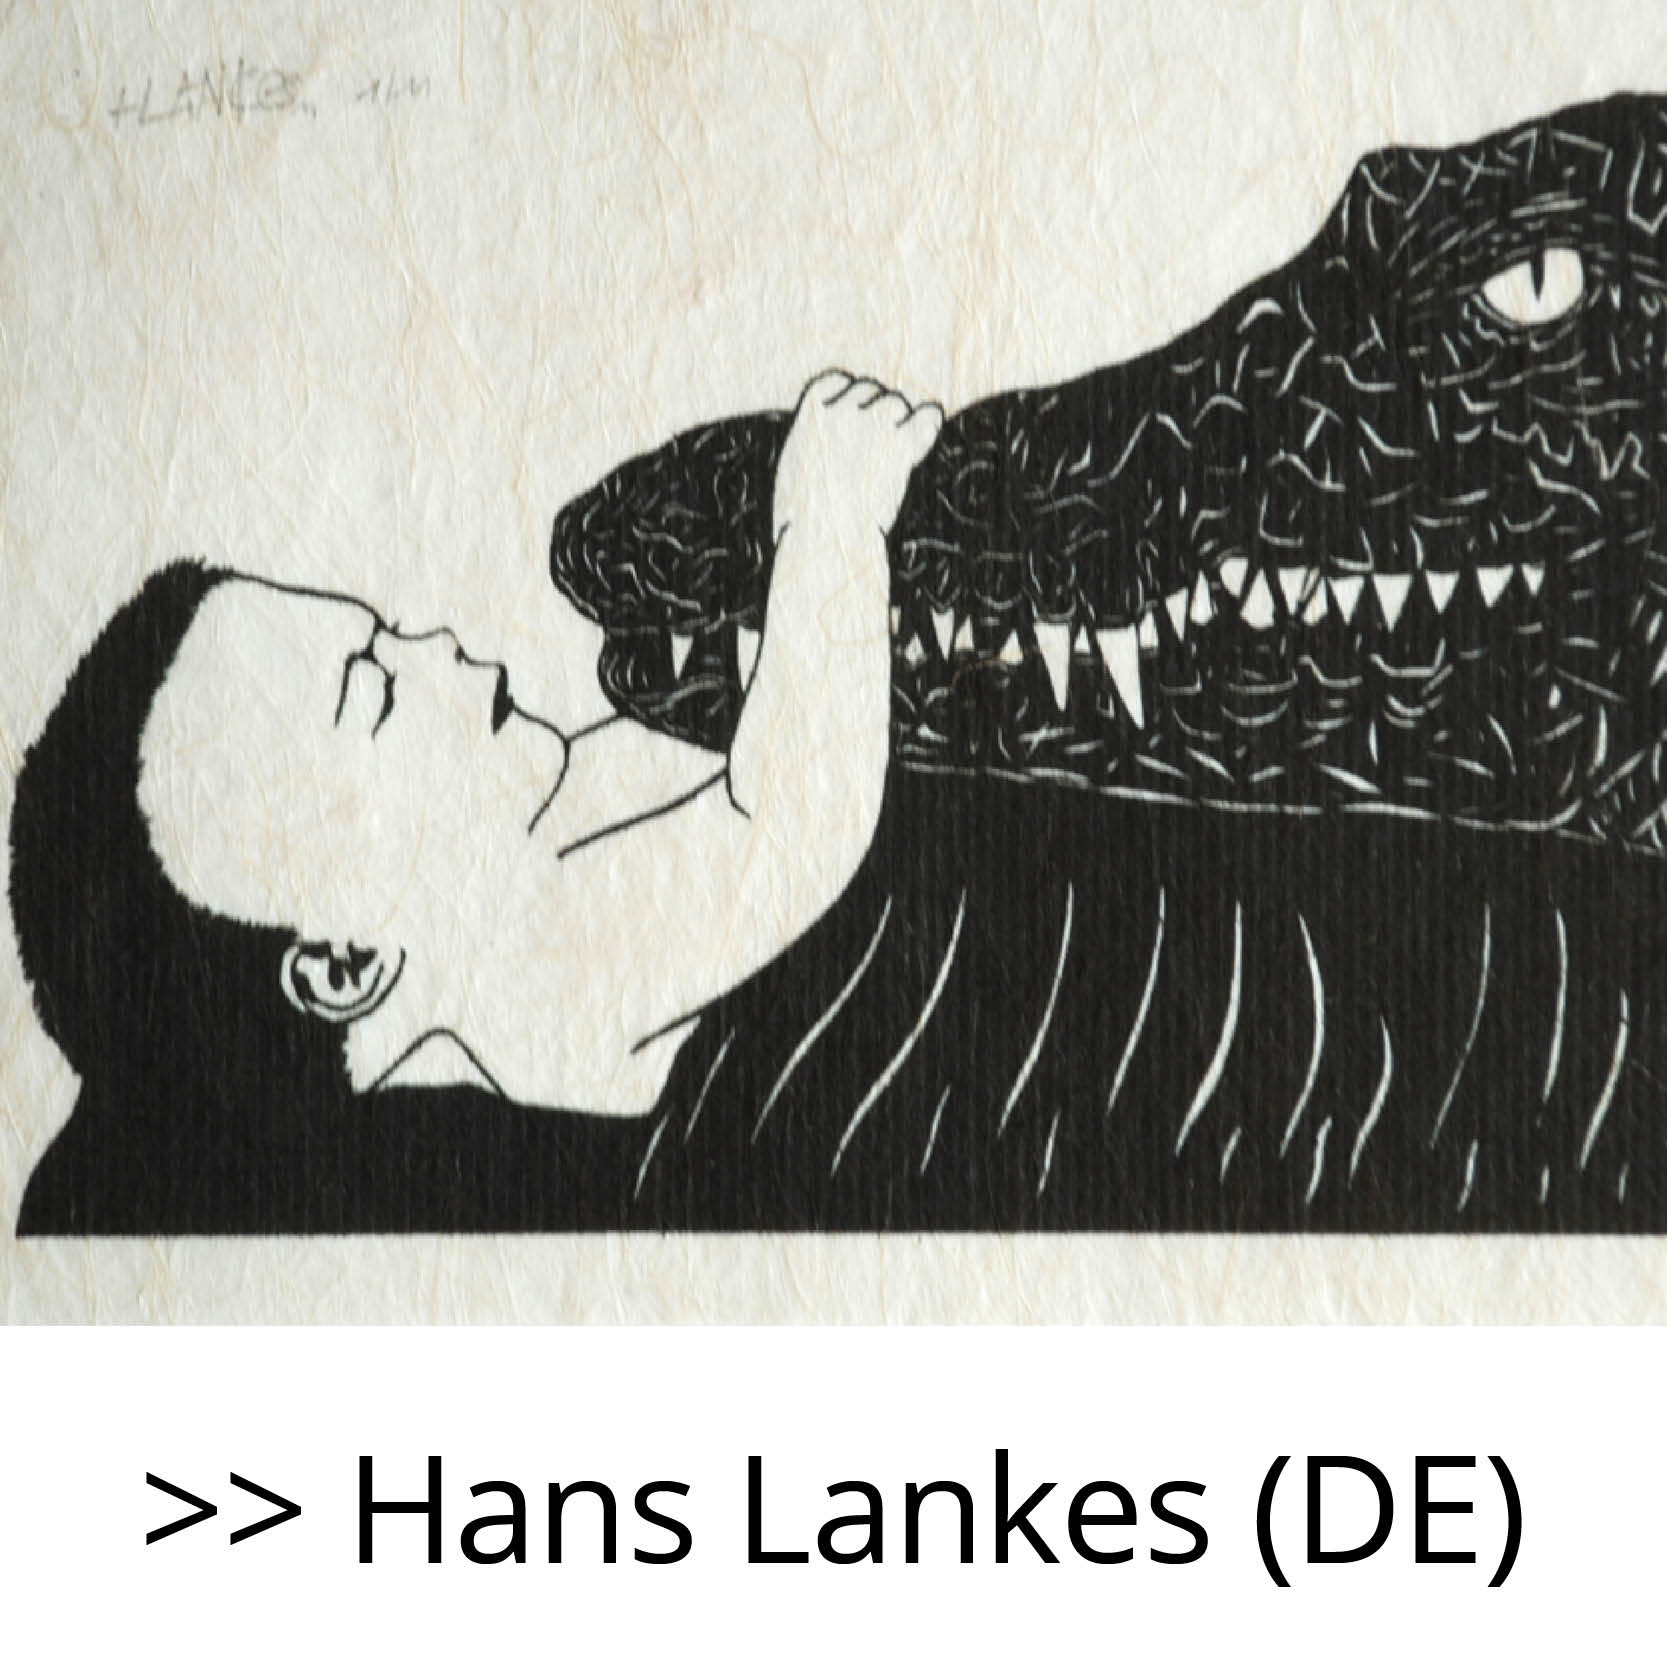 Hans_Lankes_(DE)